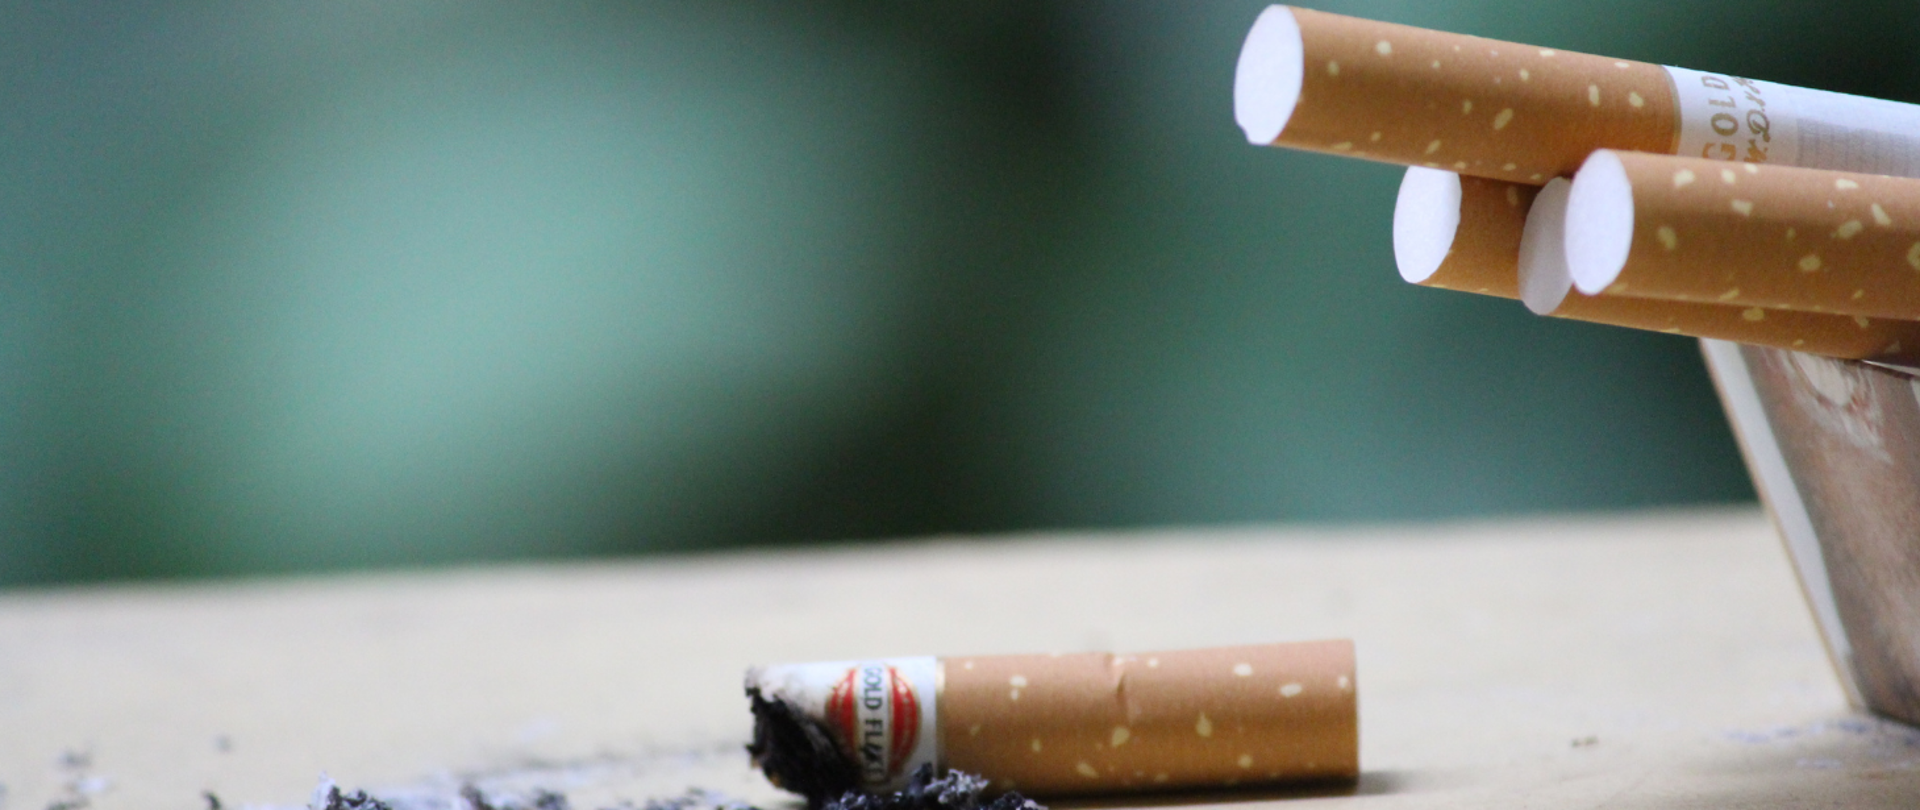 Kilka papierosów umieszczonych w popielniczce i jeden wypalony papieros oraz popiół leżące na stole